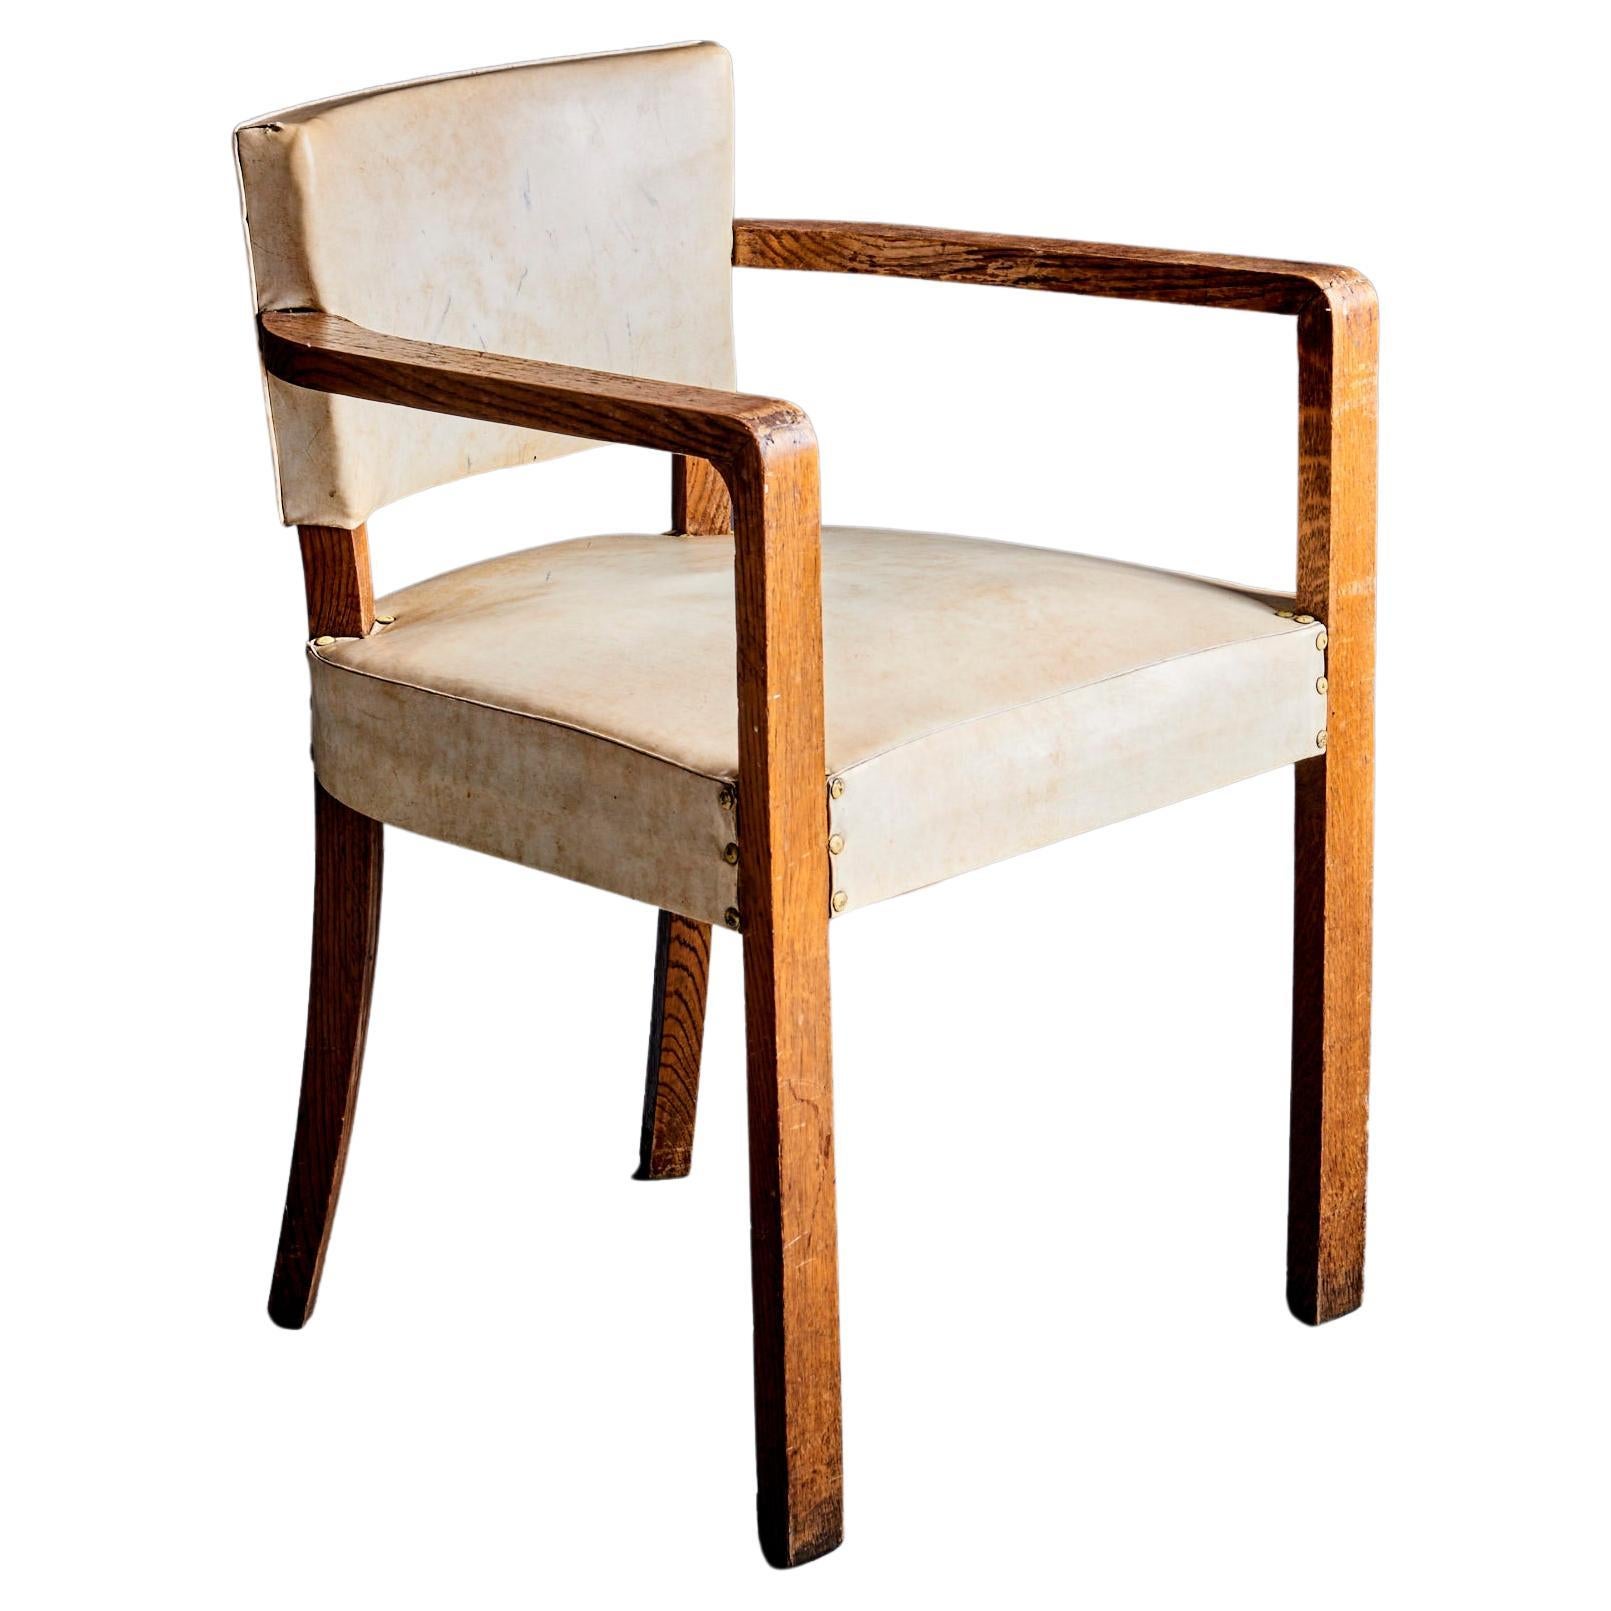 Italian Art Deco Arm Chair, 1930s